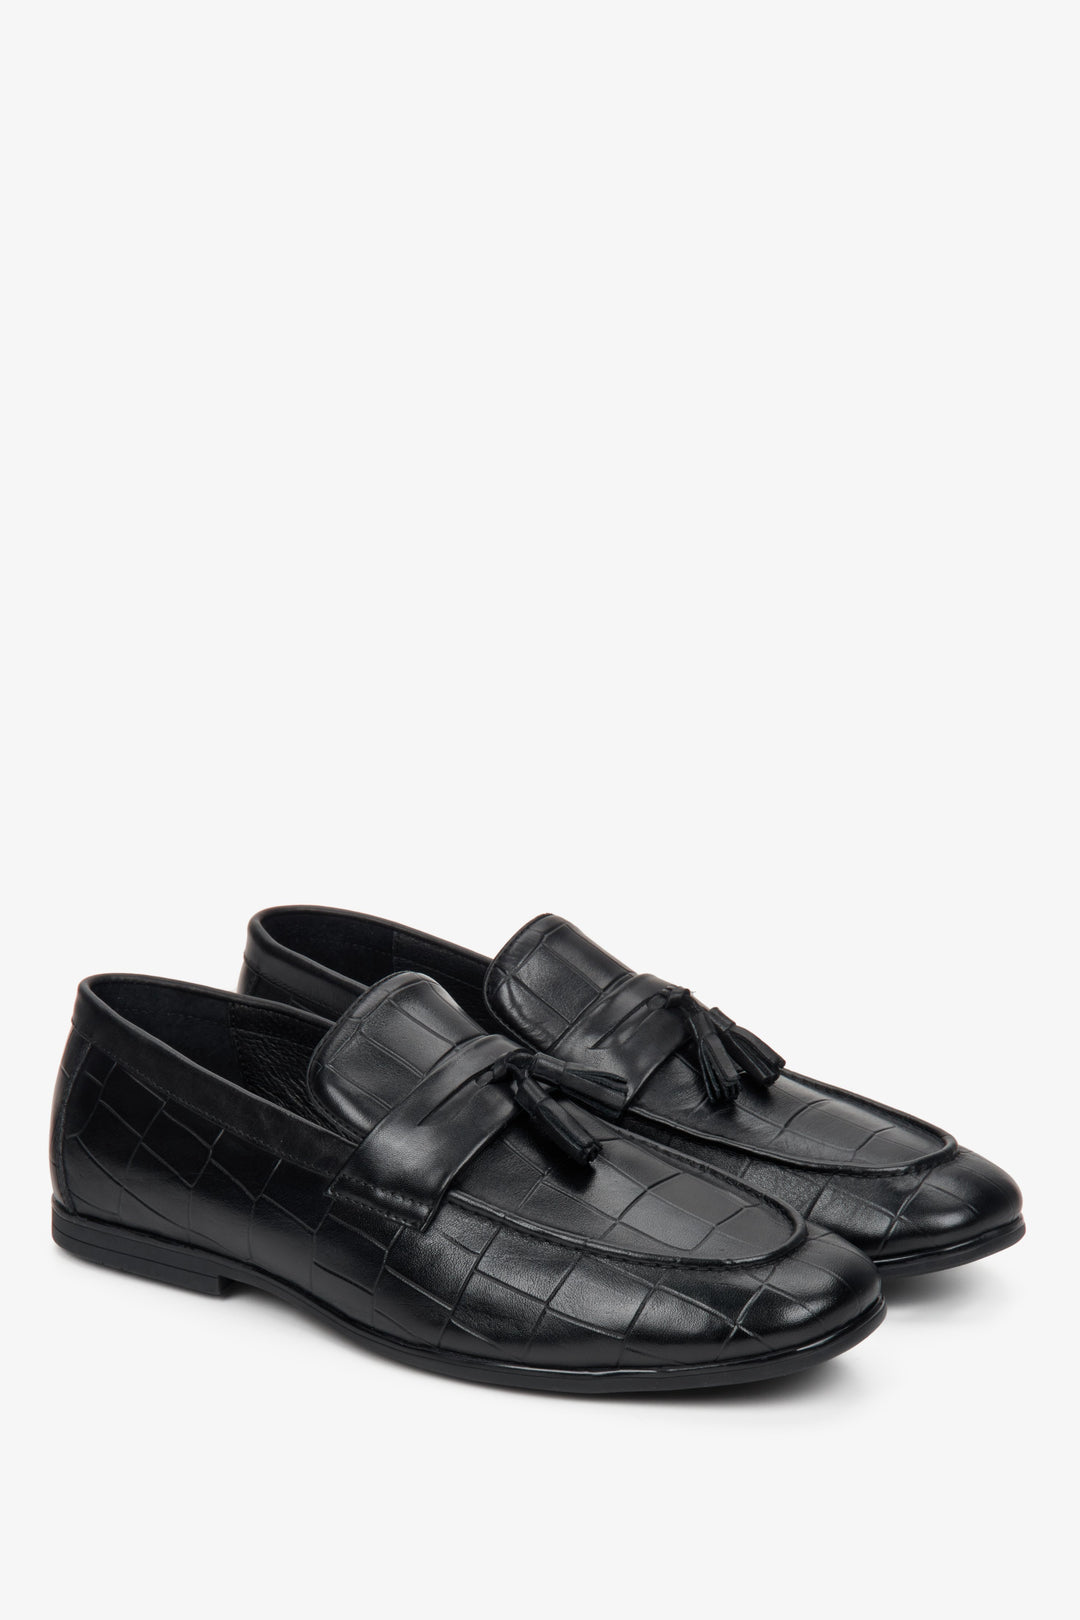 Lordsy męskie skórzane w kolorze czarnym - zbliżenie na przód i profil butów.